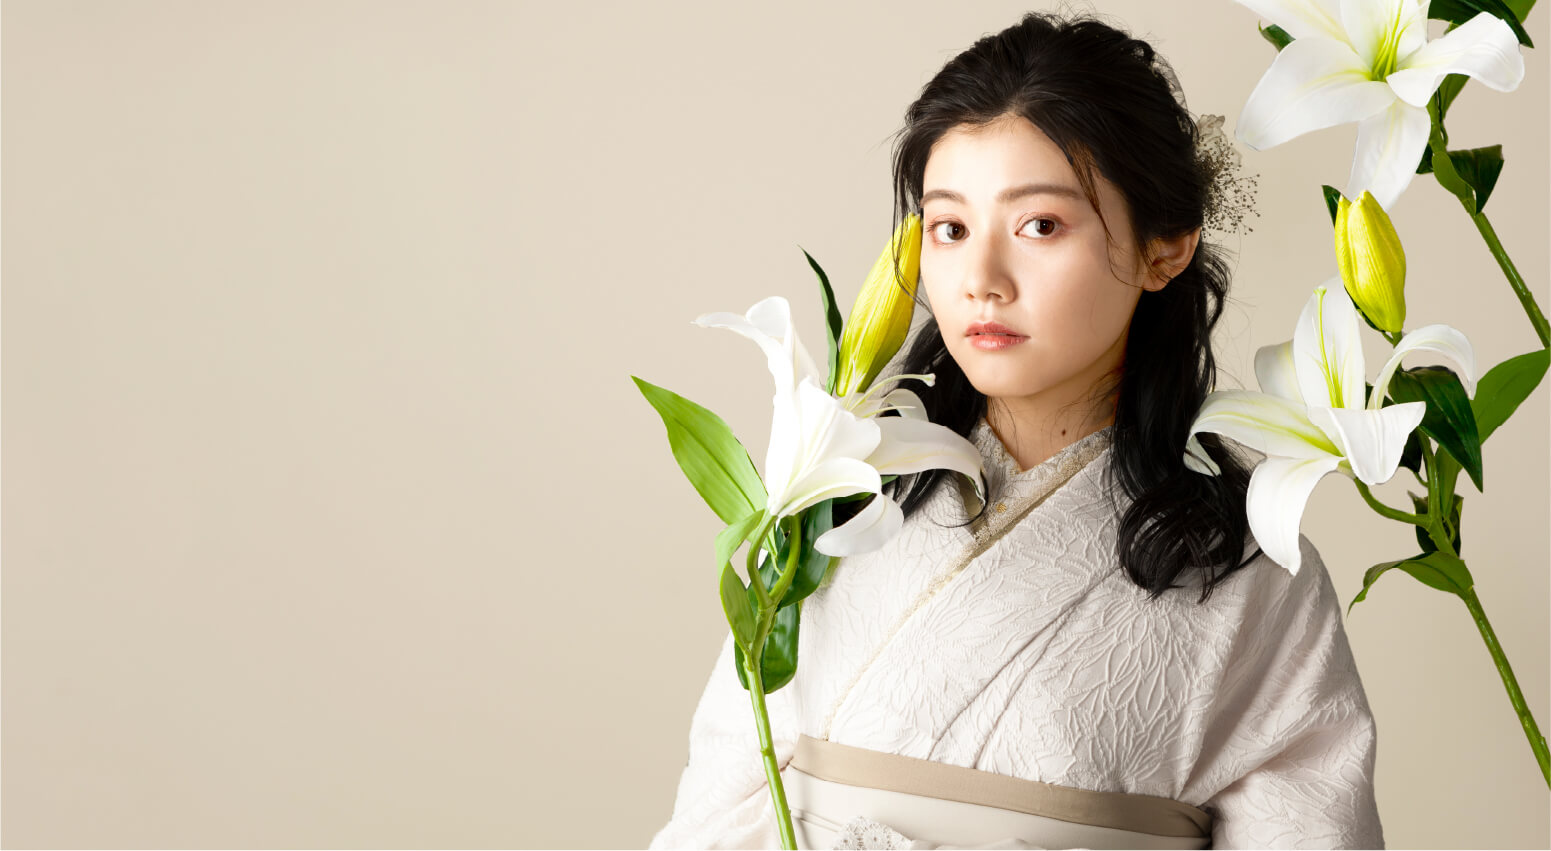 花の刺繍が入った白い着物にベージュの袴を合わせたモデルのイメージ